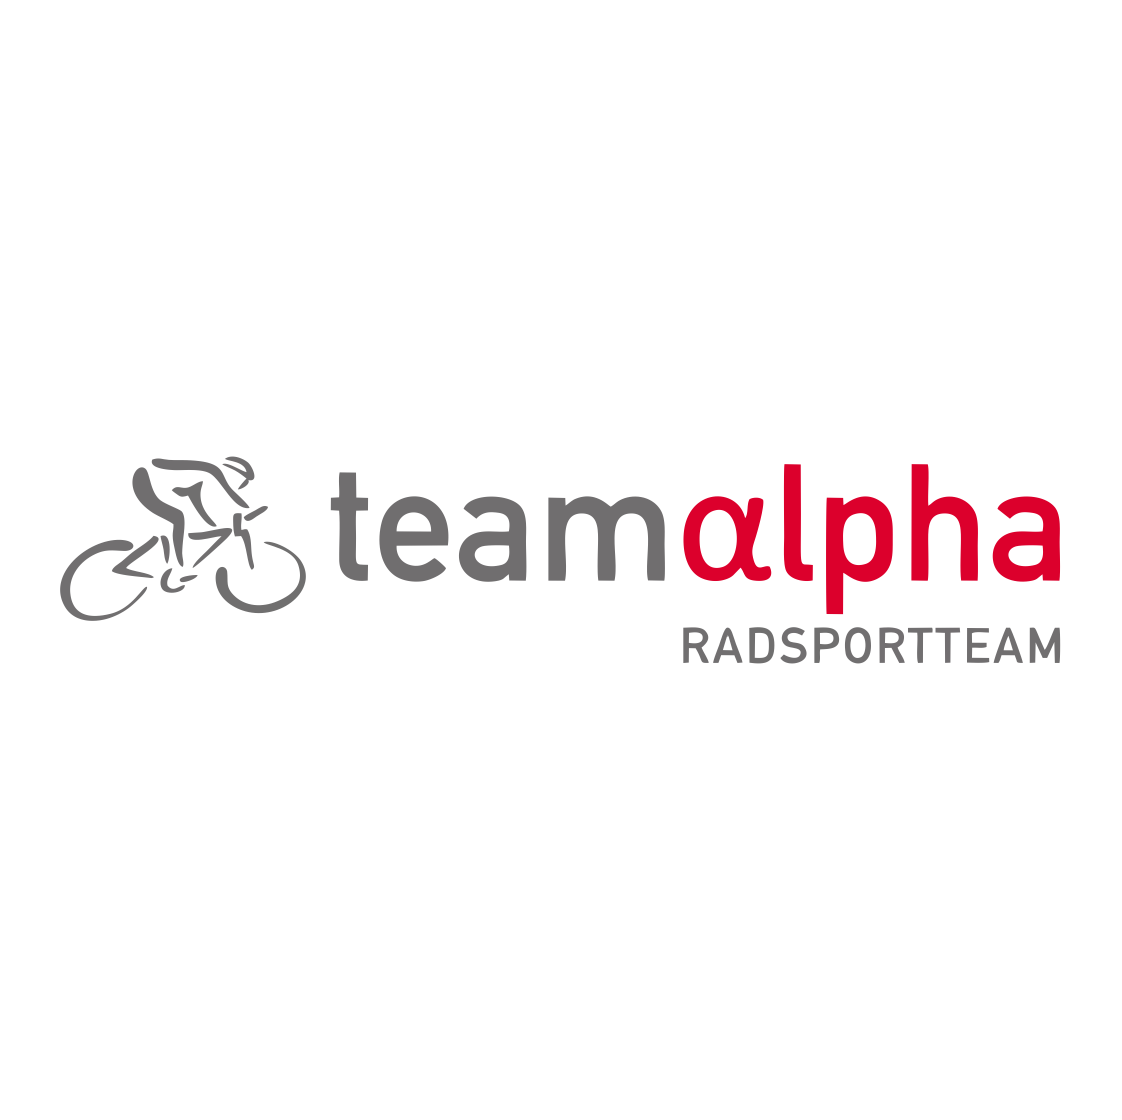 team alpha - Radsportteam